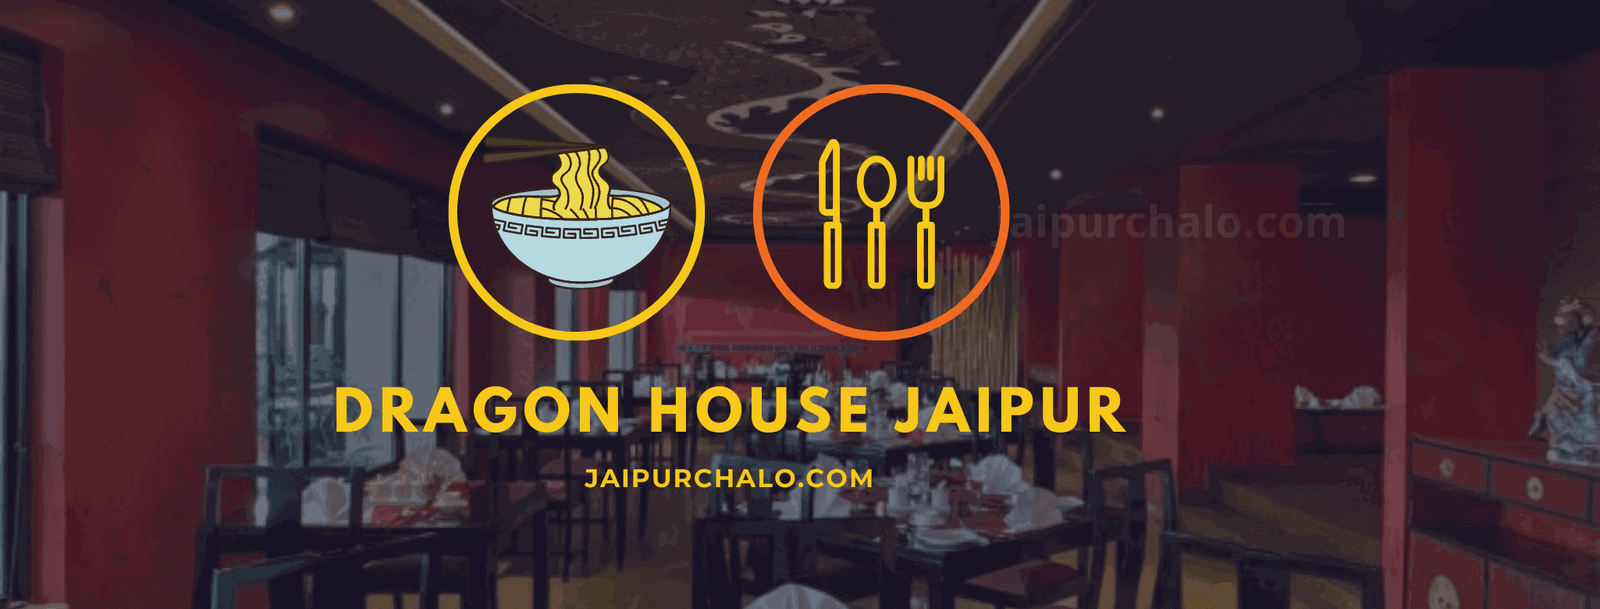 Dragon House Jaipur